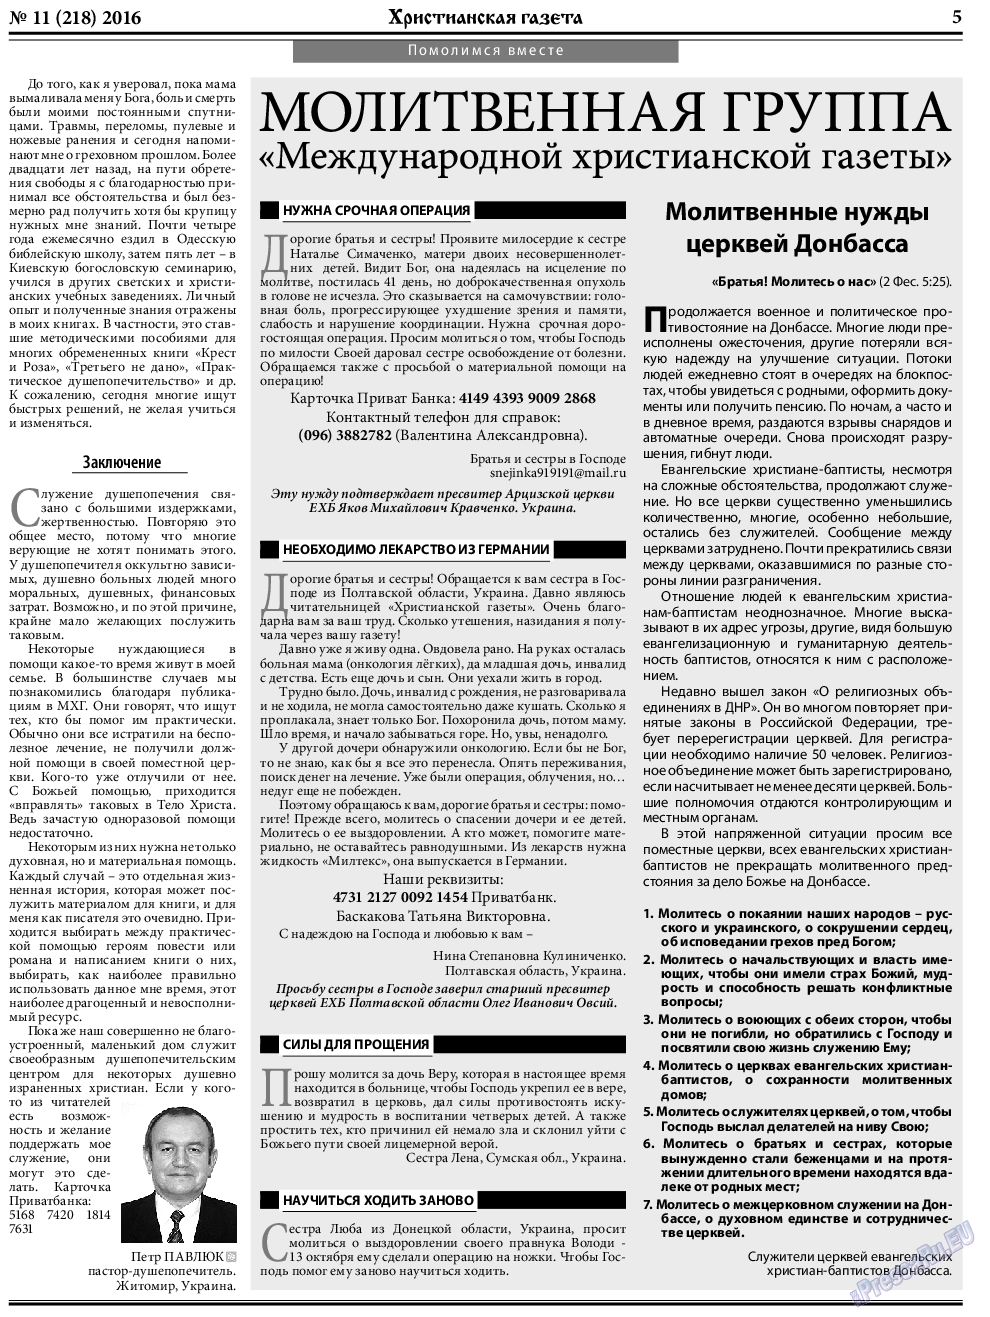 Христианская газета, газета. 2016 №11 стр.5